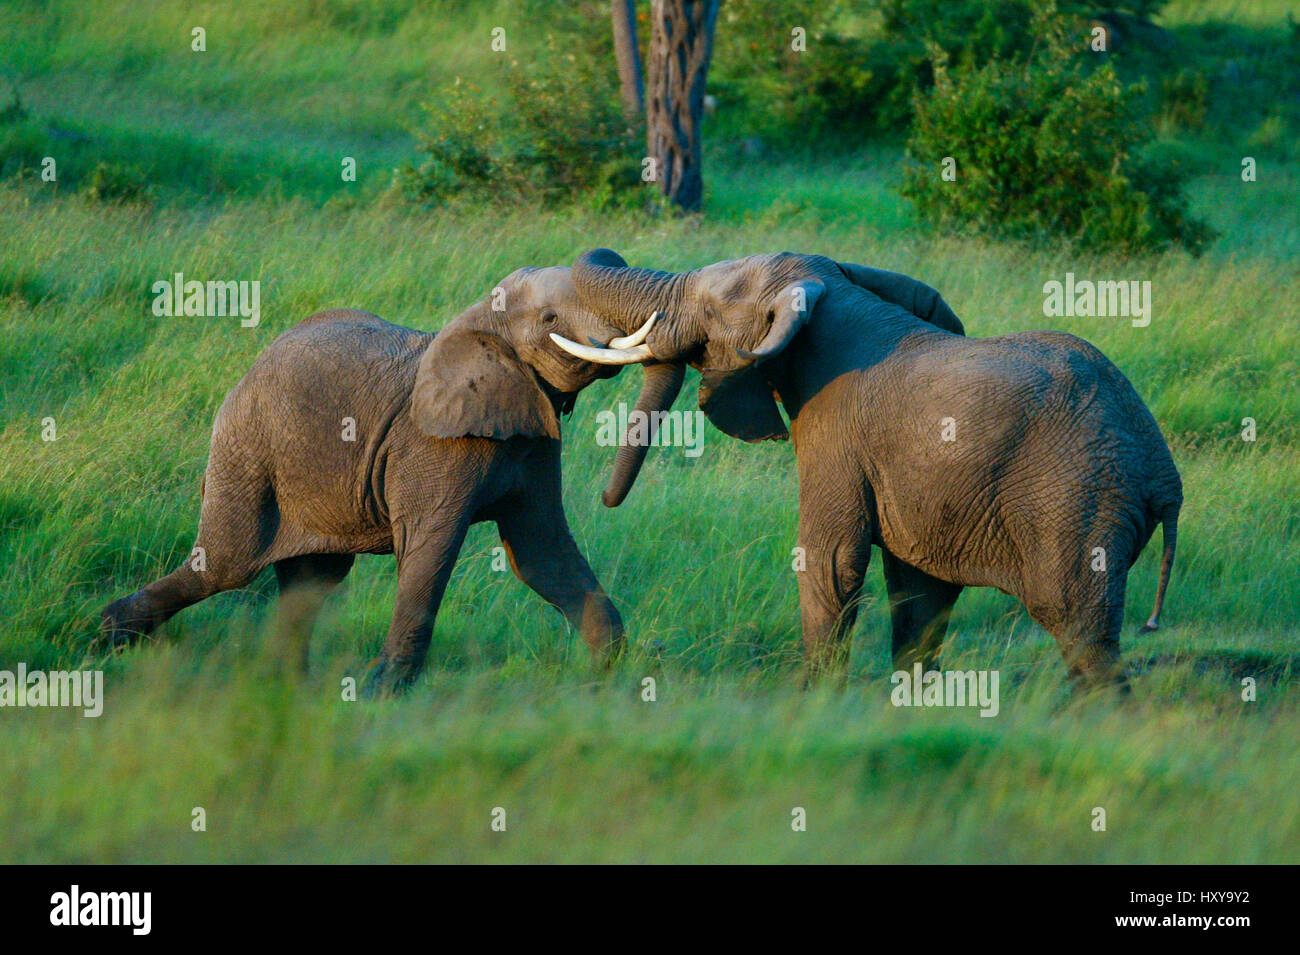 L'éléphant africain (Loxodonta africana), les mâles se battre. Masai-Mara Game Reserve, Kenya. Séquence 2 de 4. Banque D'Images